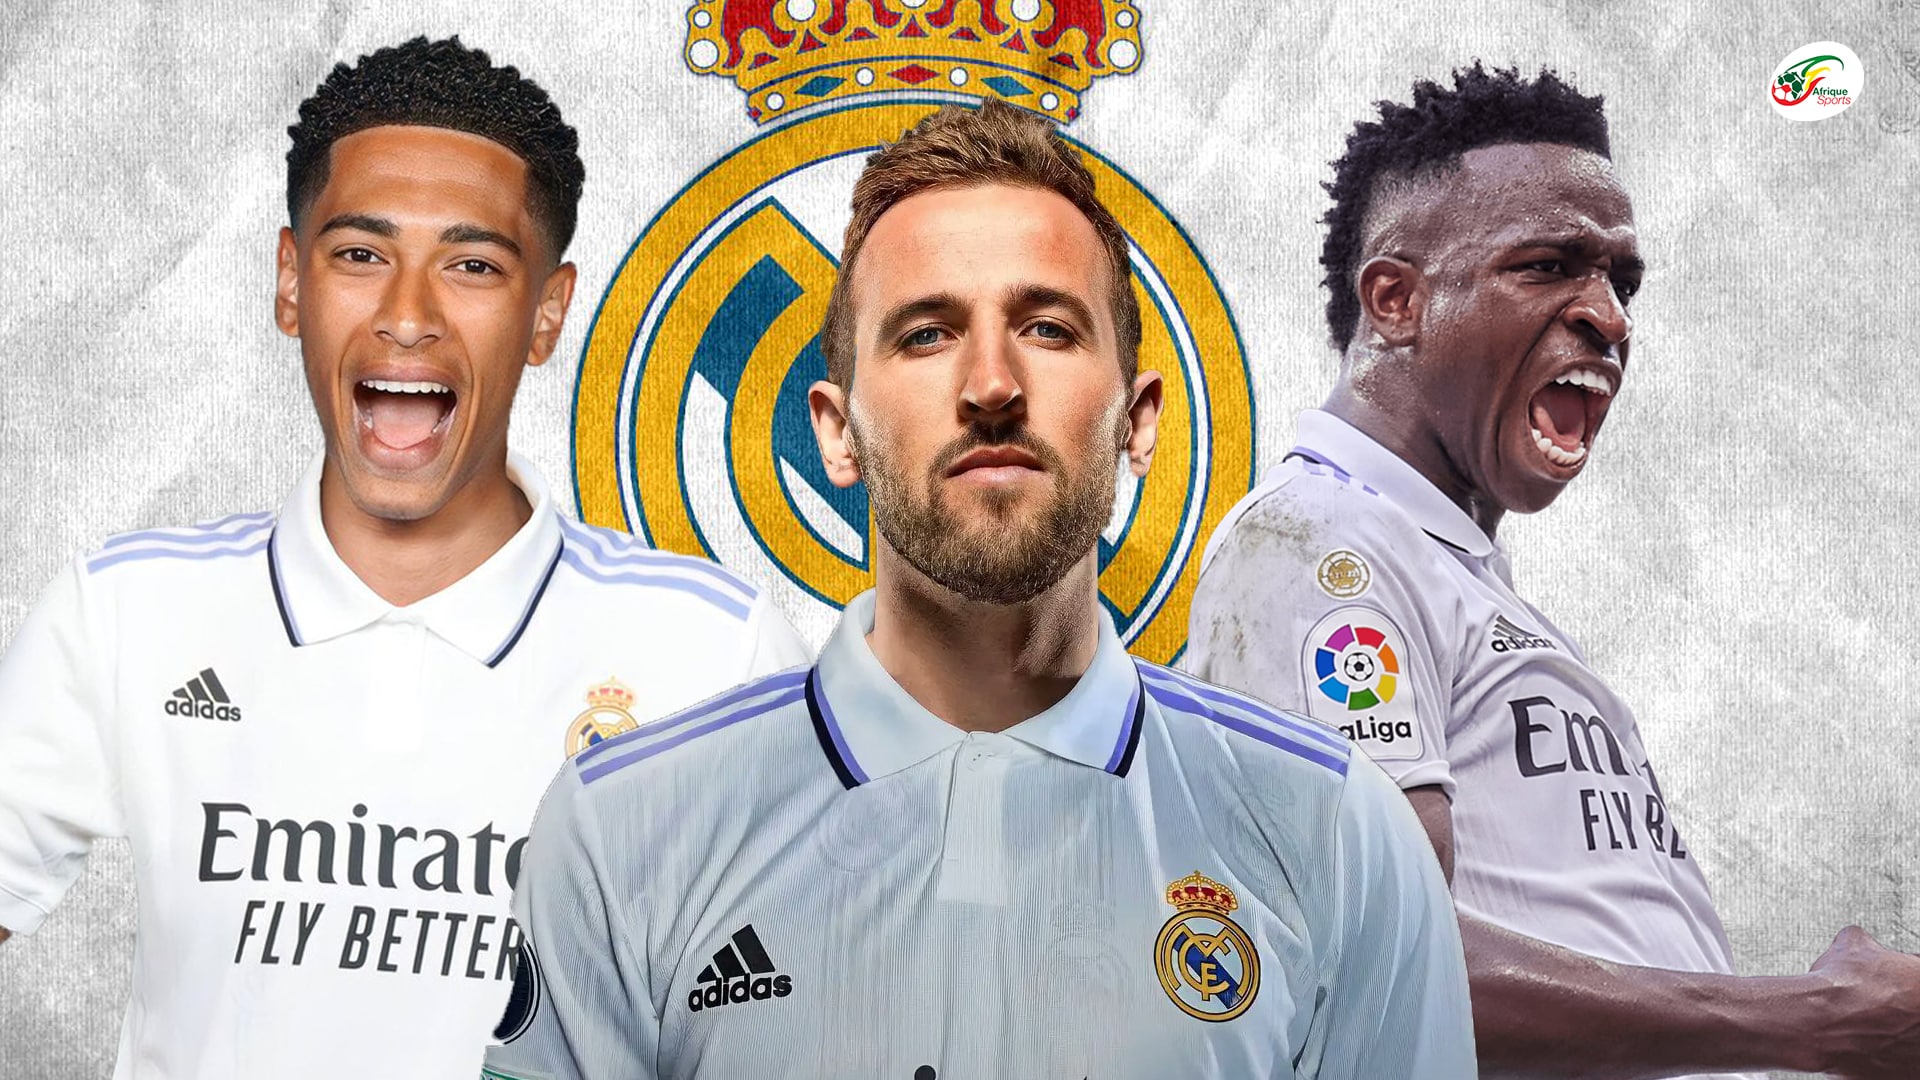 Le redoutable ’11’ que pourrait aligner le Real Madrid l’année prochaine